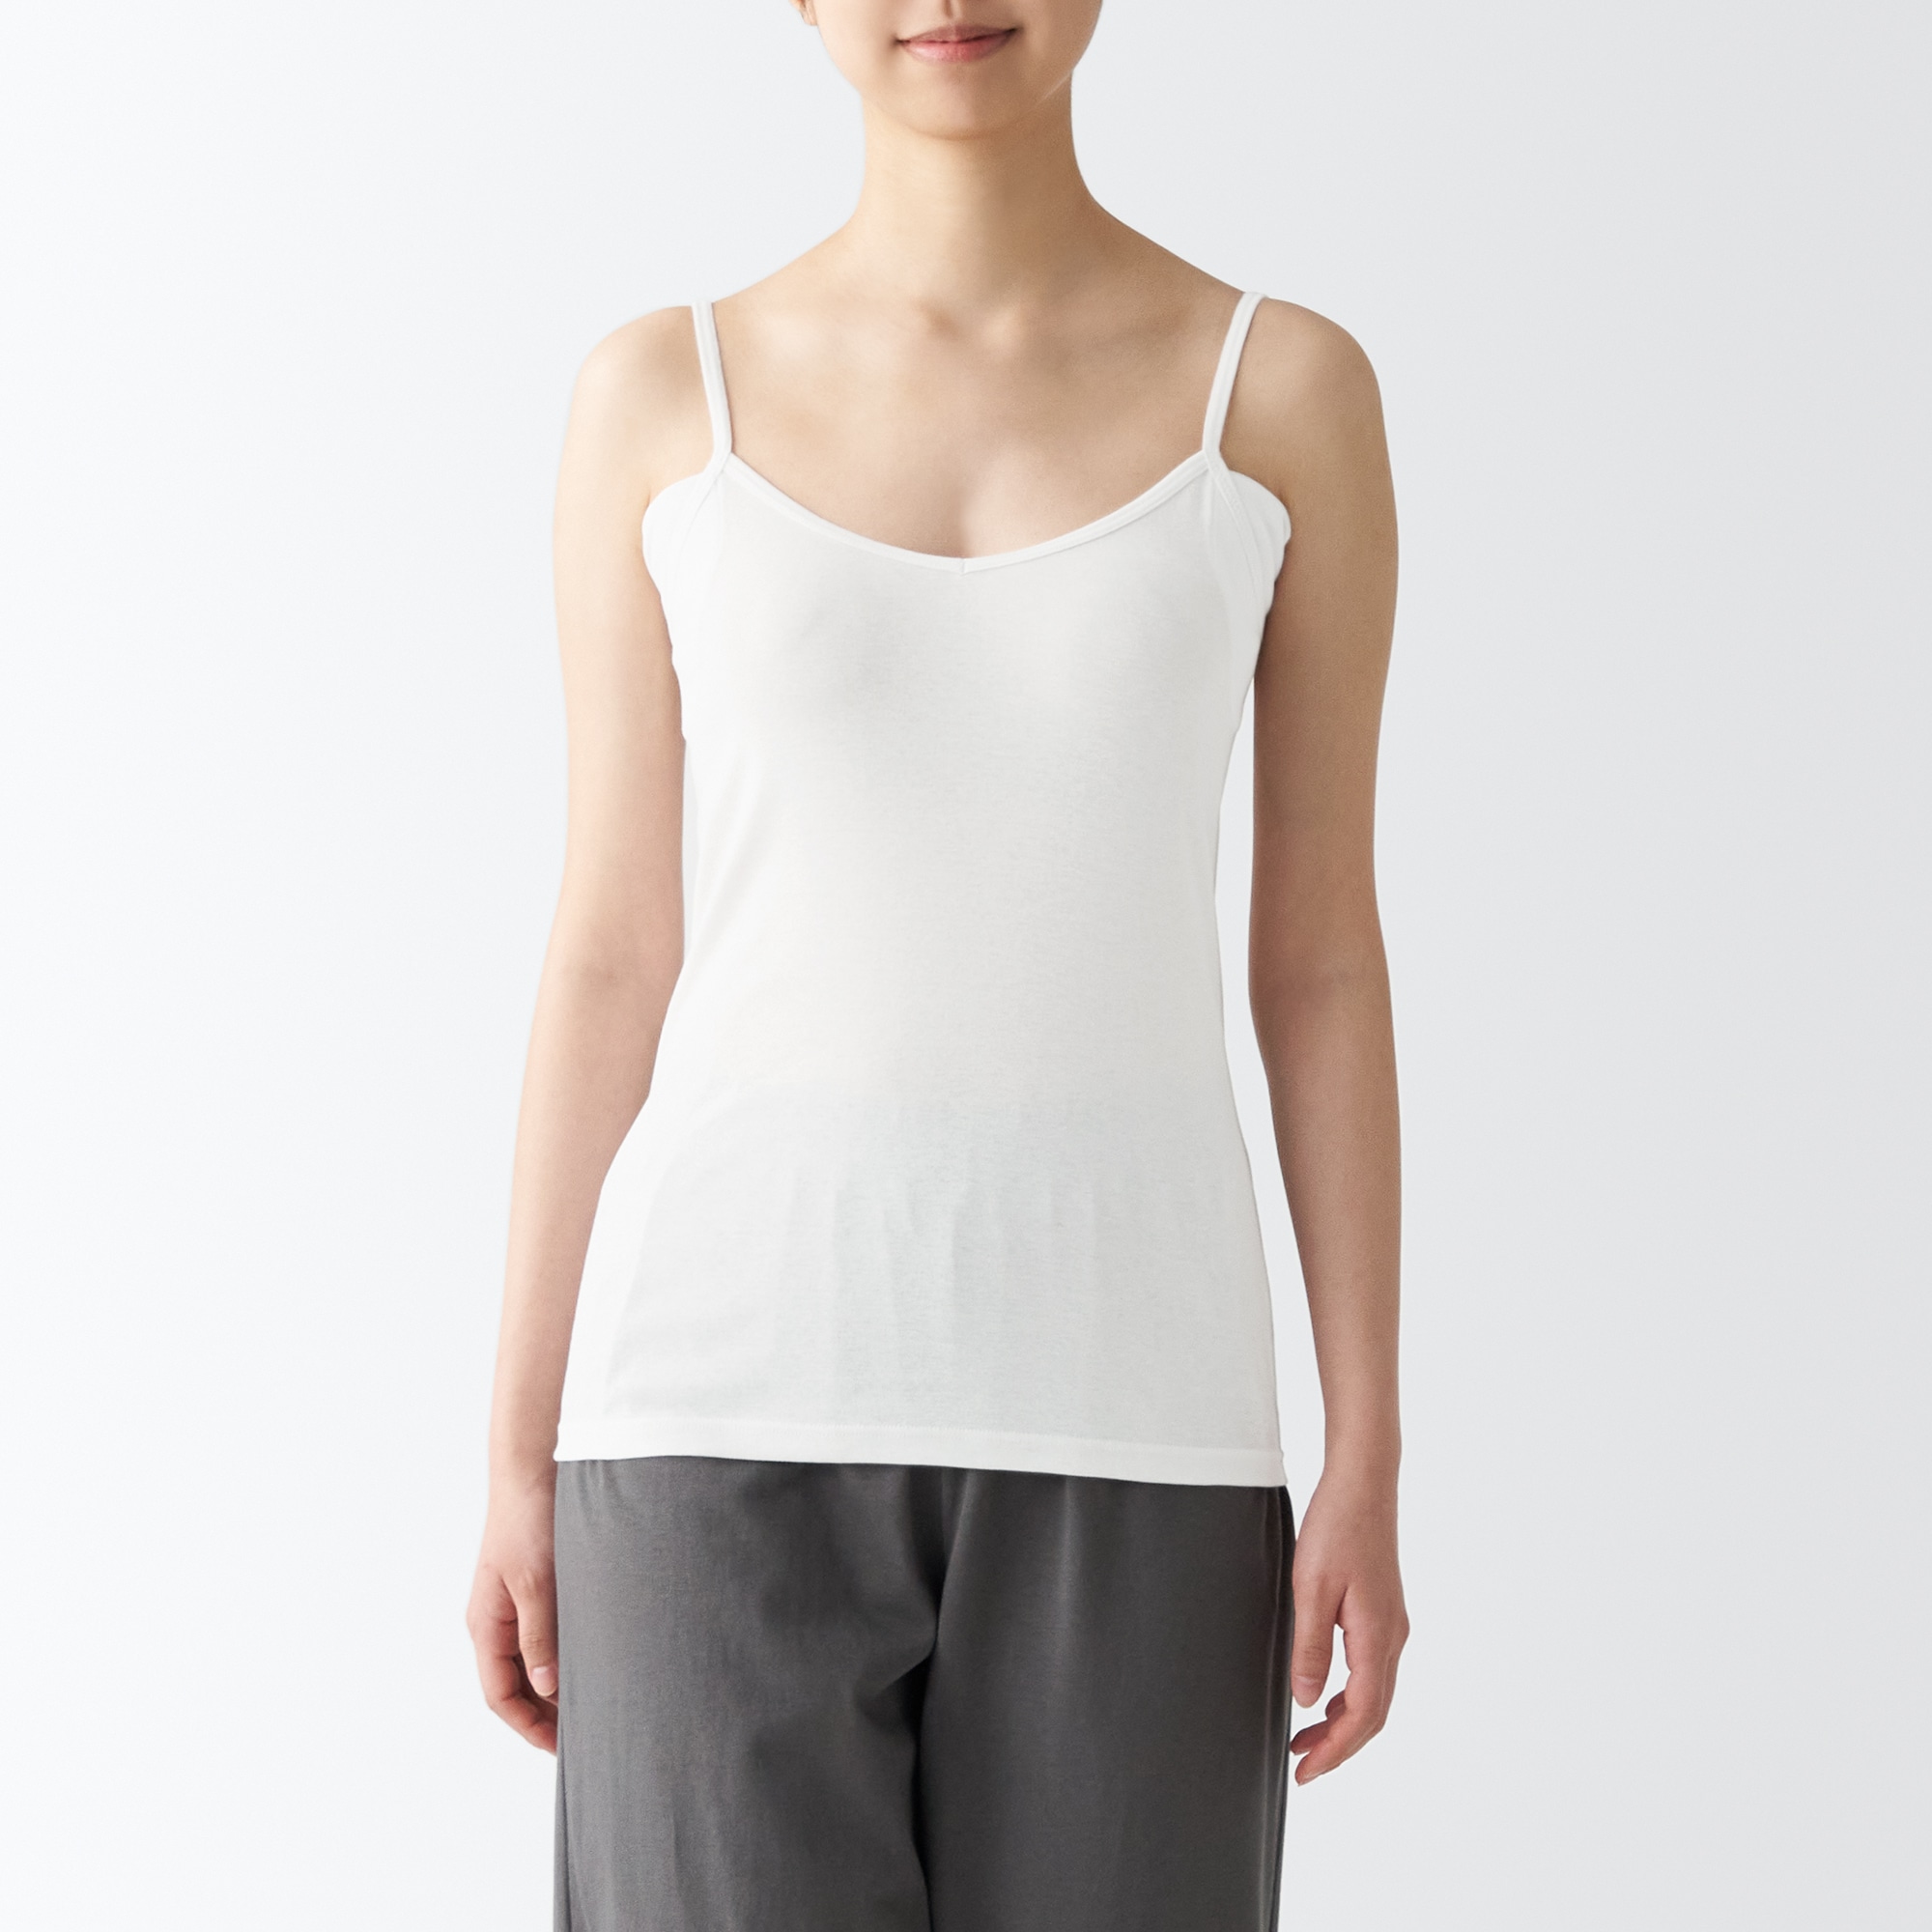 무인양품 일본 여성 겨땀 패드 끈나시 캐미솔 S 화이트